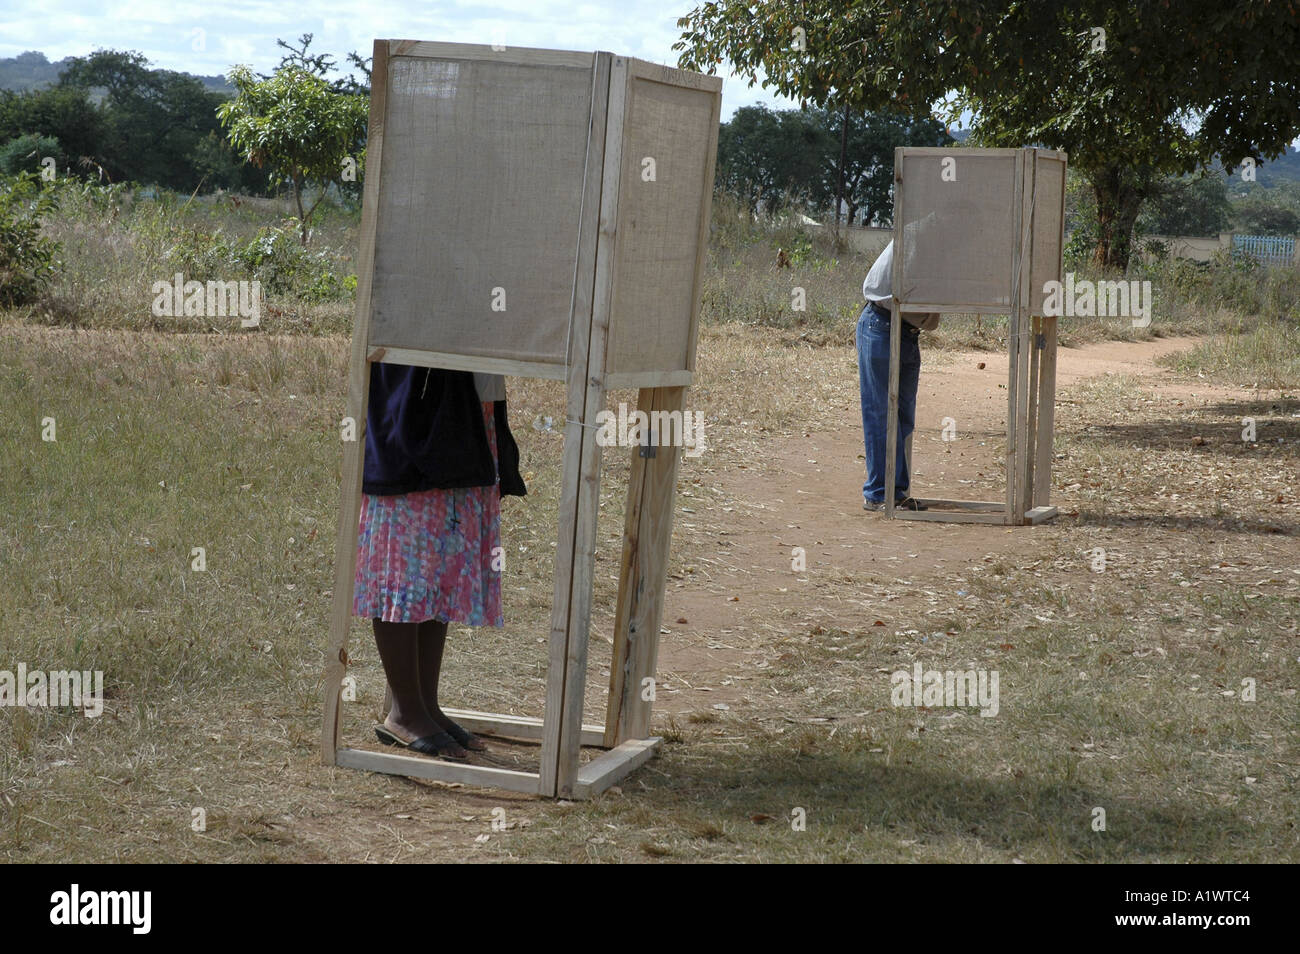 Votante pone sus votos en una cabina de votación en el exterior , Lilongwe. Malawi la elección del 20 de mayo de 2004 Foto de stock